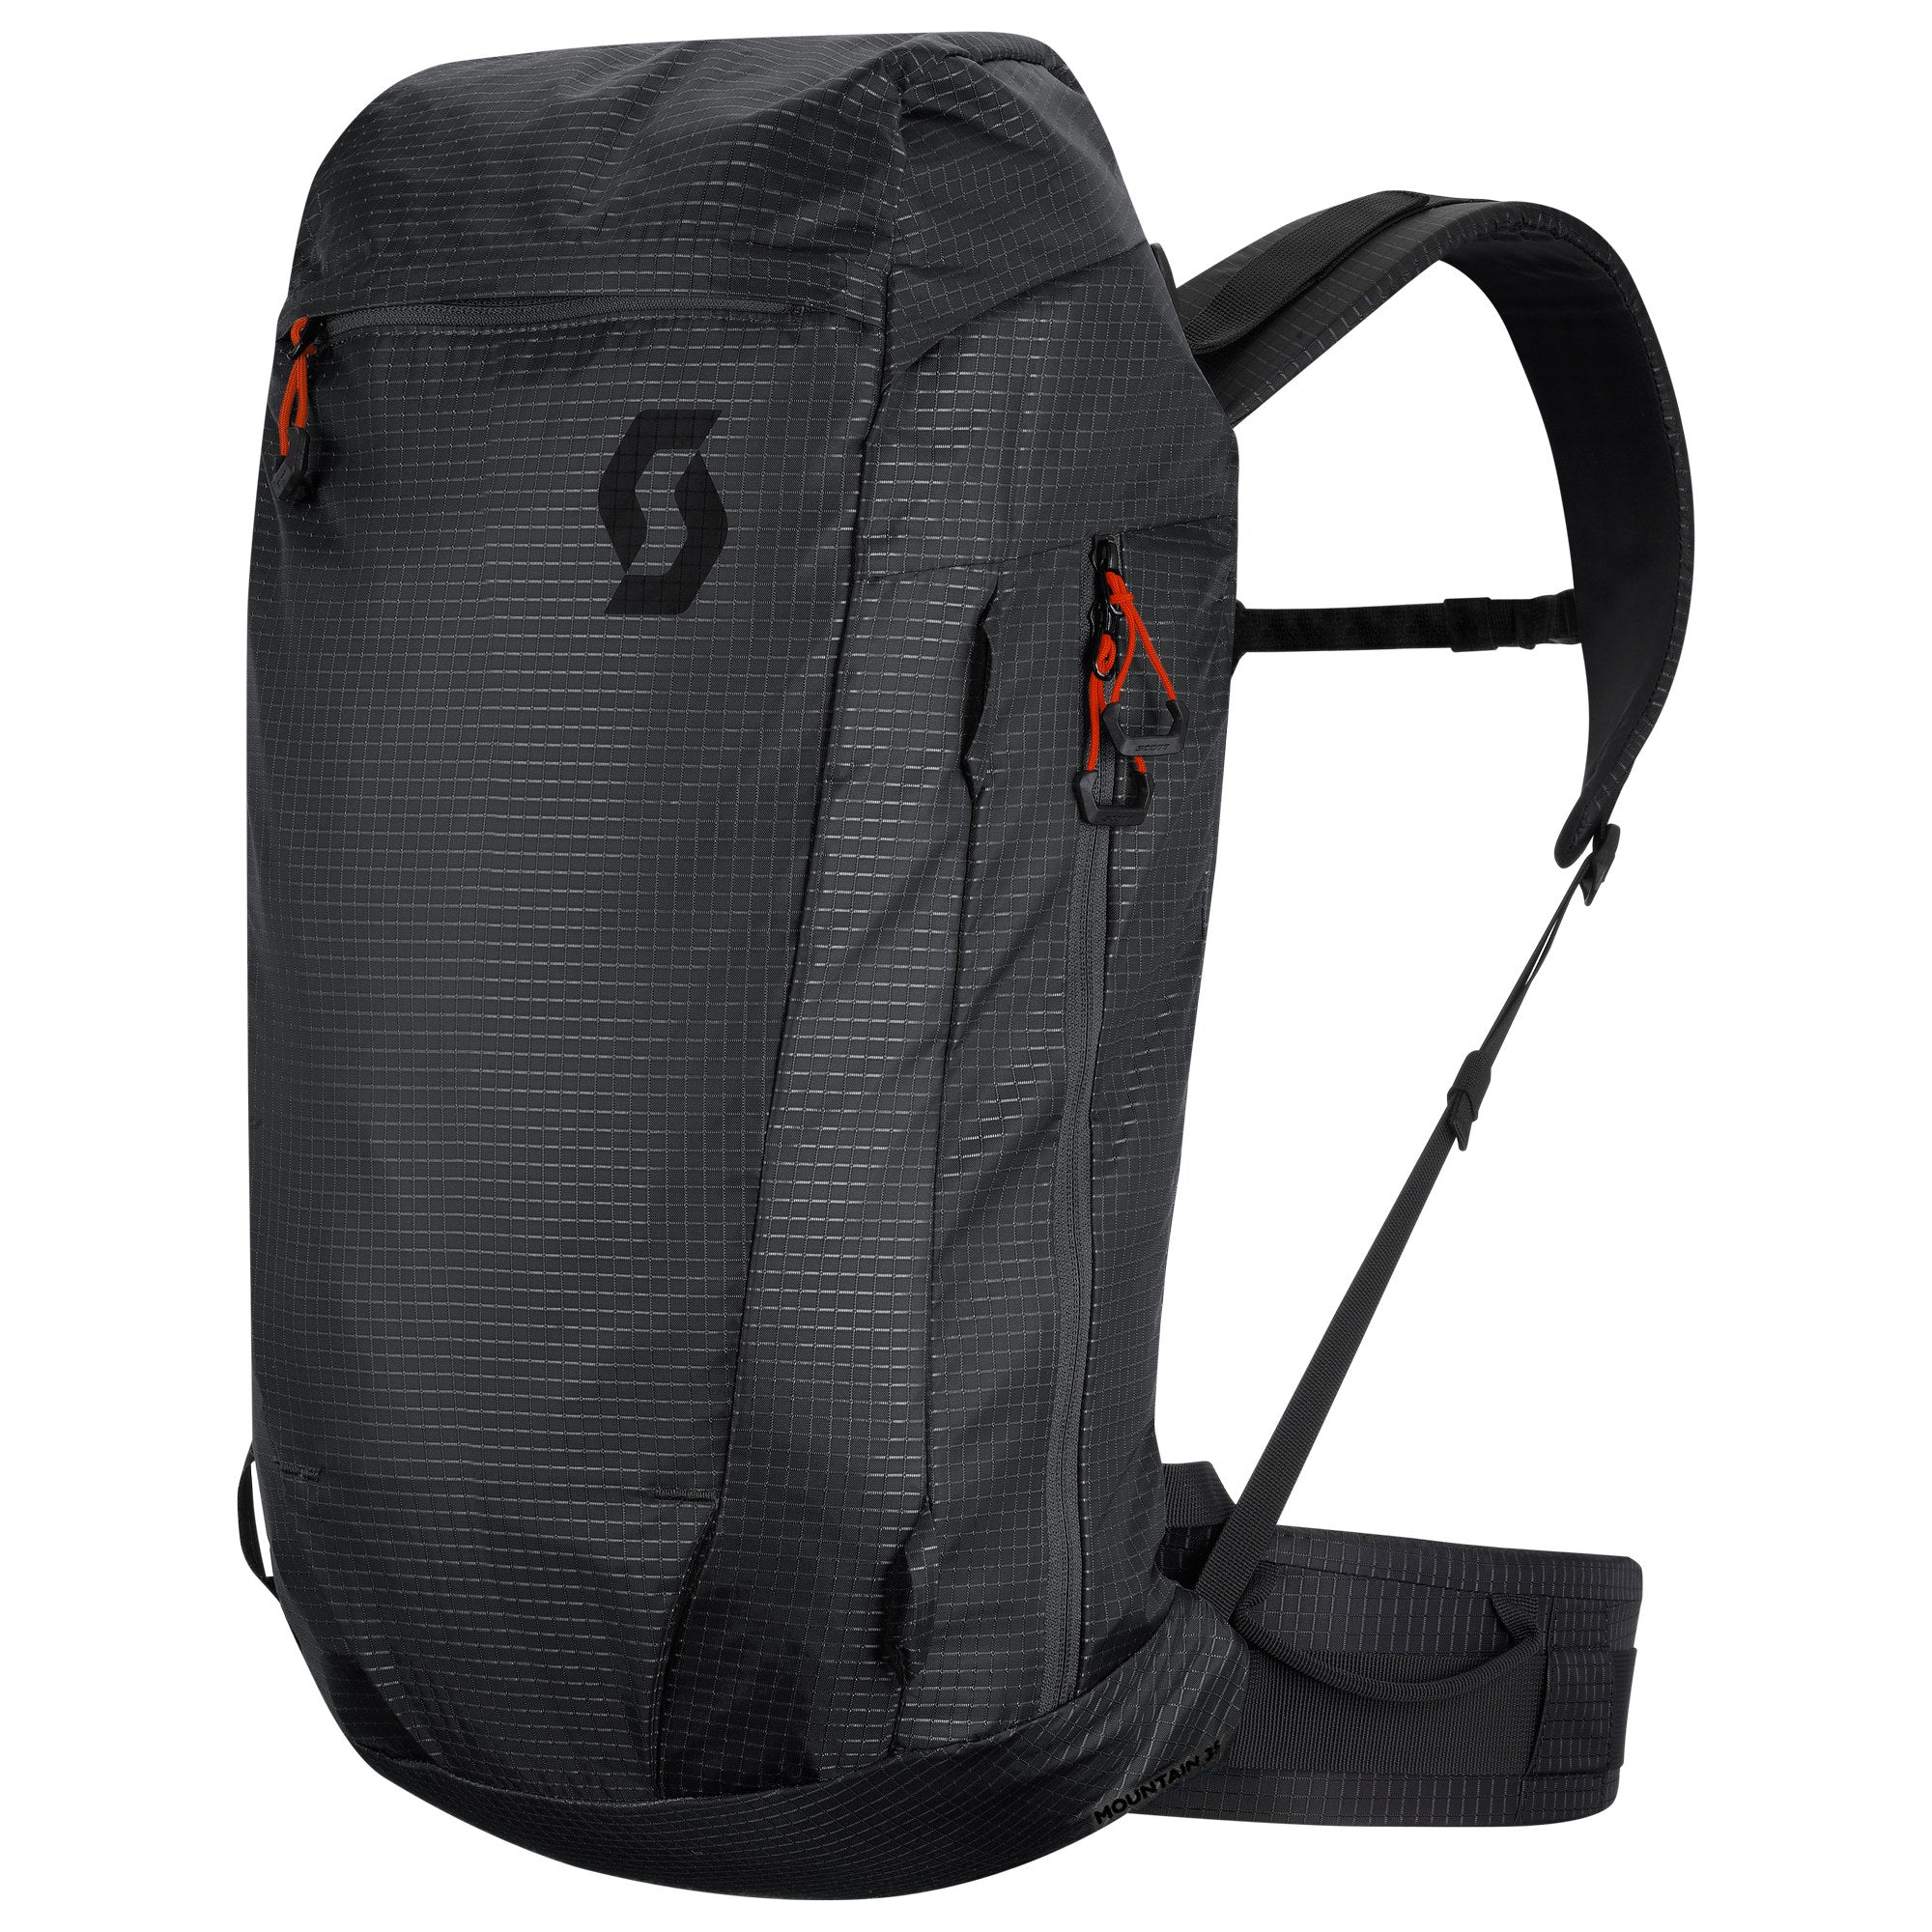 17500円最安な価格 買取評価 [ak] Japan Guide 35L Backpack